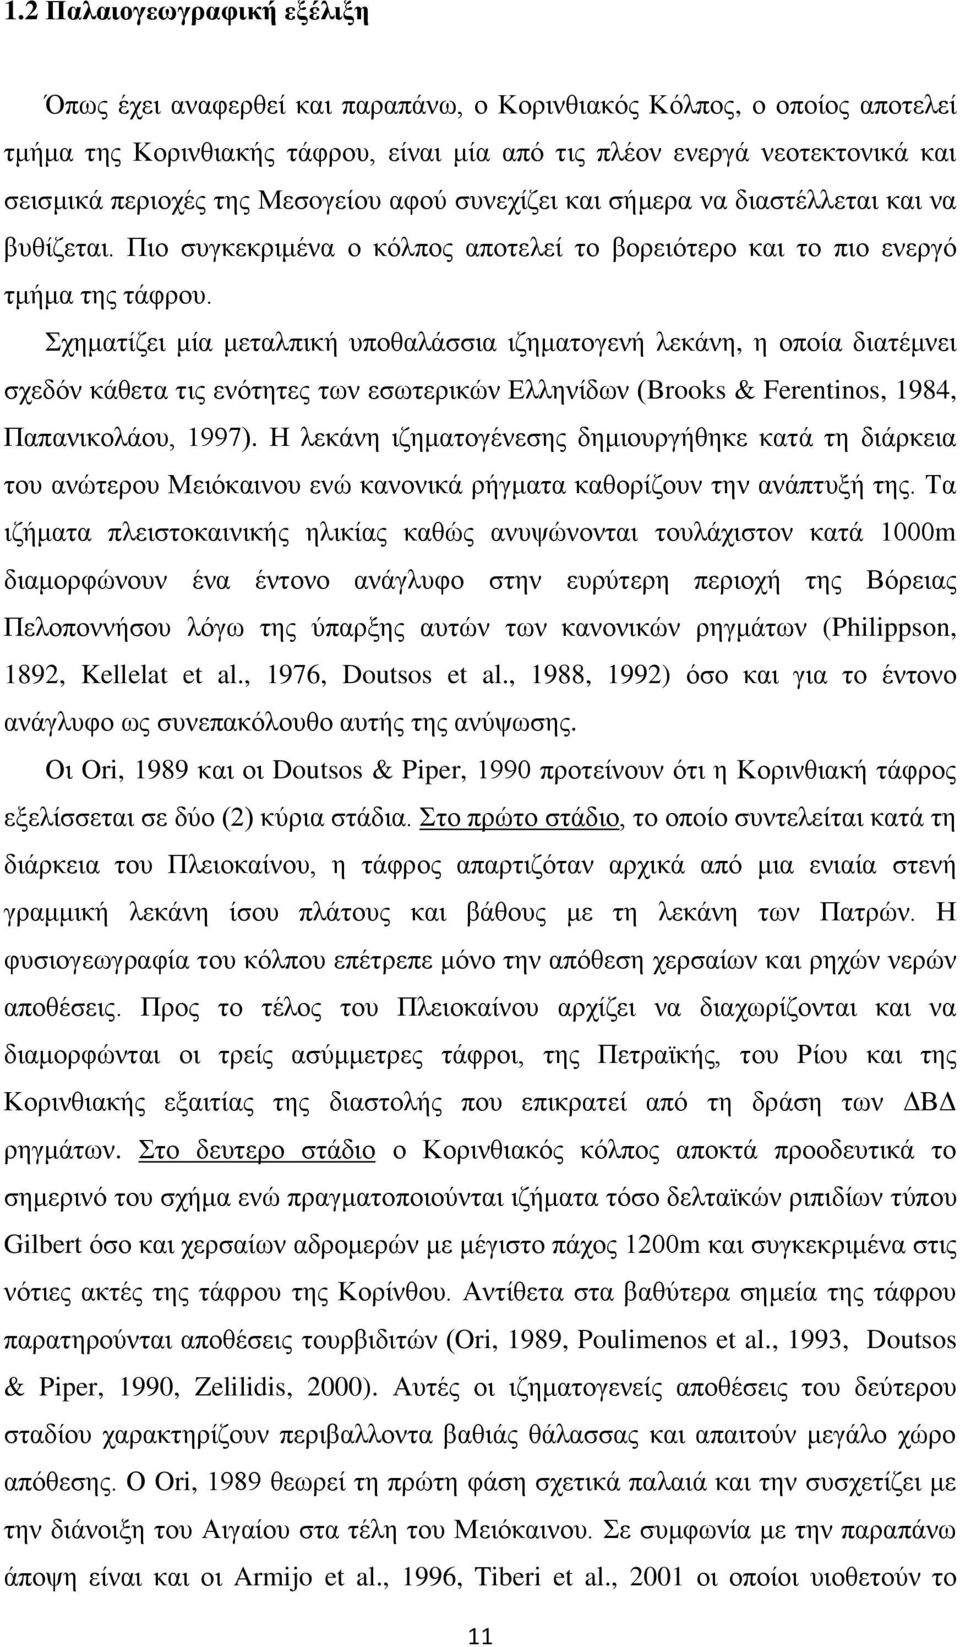 Σχηματίζει μία μεταλπική υποθαλάσσια ιζηματογενή λεκάνη, η οποία διατέμνει σχεδόν κάθετα τις ενότητες των εσωτερικών Ελληνίδων (Brooks & Ferentinos, 1984, Παπανικολάου, 1997).